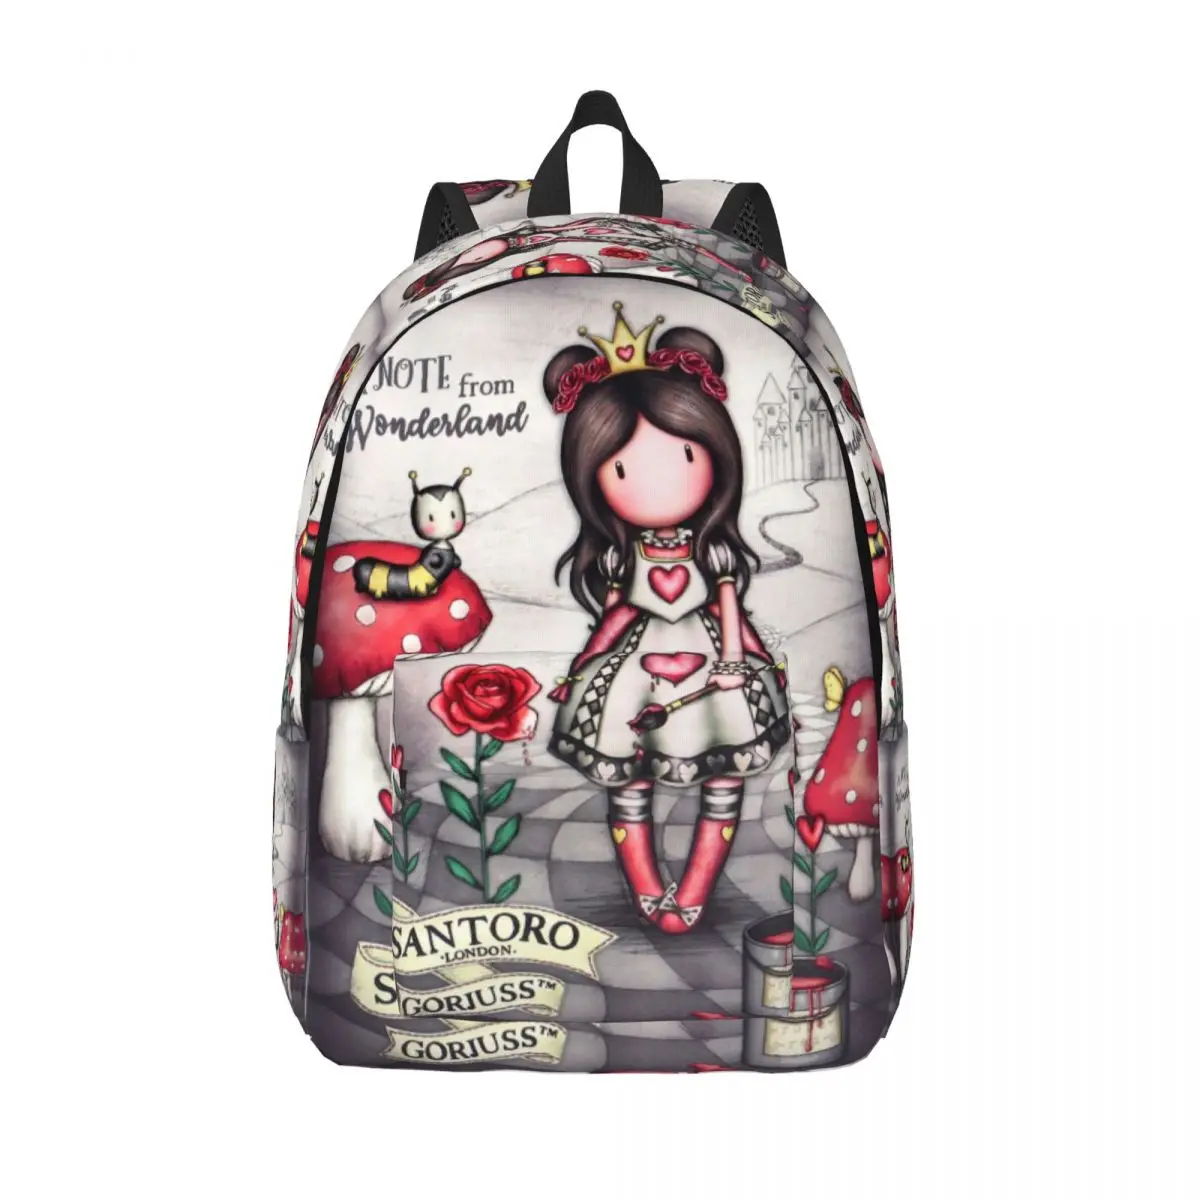 

Рюкзак для дошкольного детского сада, школьного студента, рюкзак для девочек, детский рюкзак для путешествий